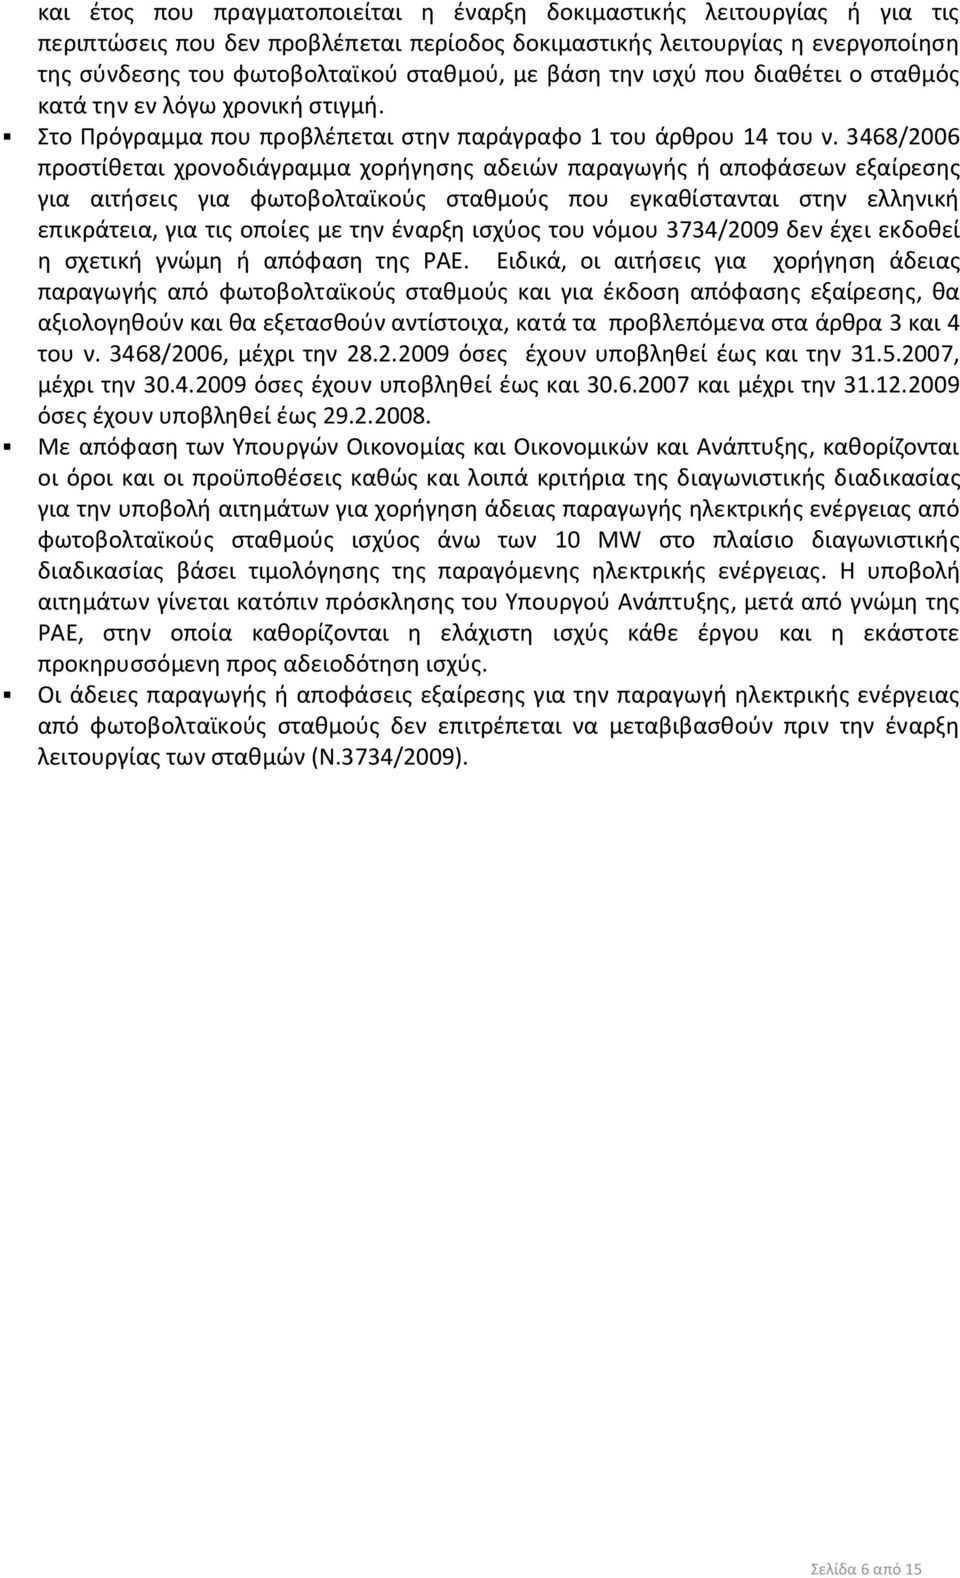 3468/2006 προστίθεται χρονοδιάγραμμα χορήγησης αδειών παραγωγής ή αποφάσεων εξαίρεσης για αιτήσεις για φωτοβολταϊκούς σταθμούς που εγκαθίστανται στην ελληνική επικράτεια, για τις οποίες με την έναρξη